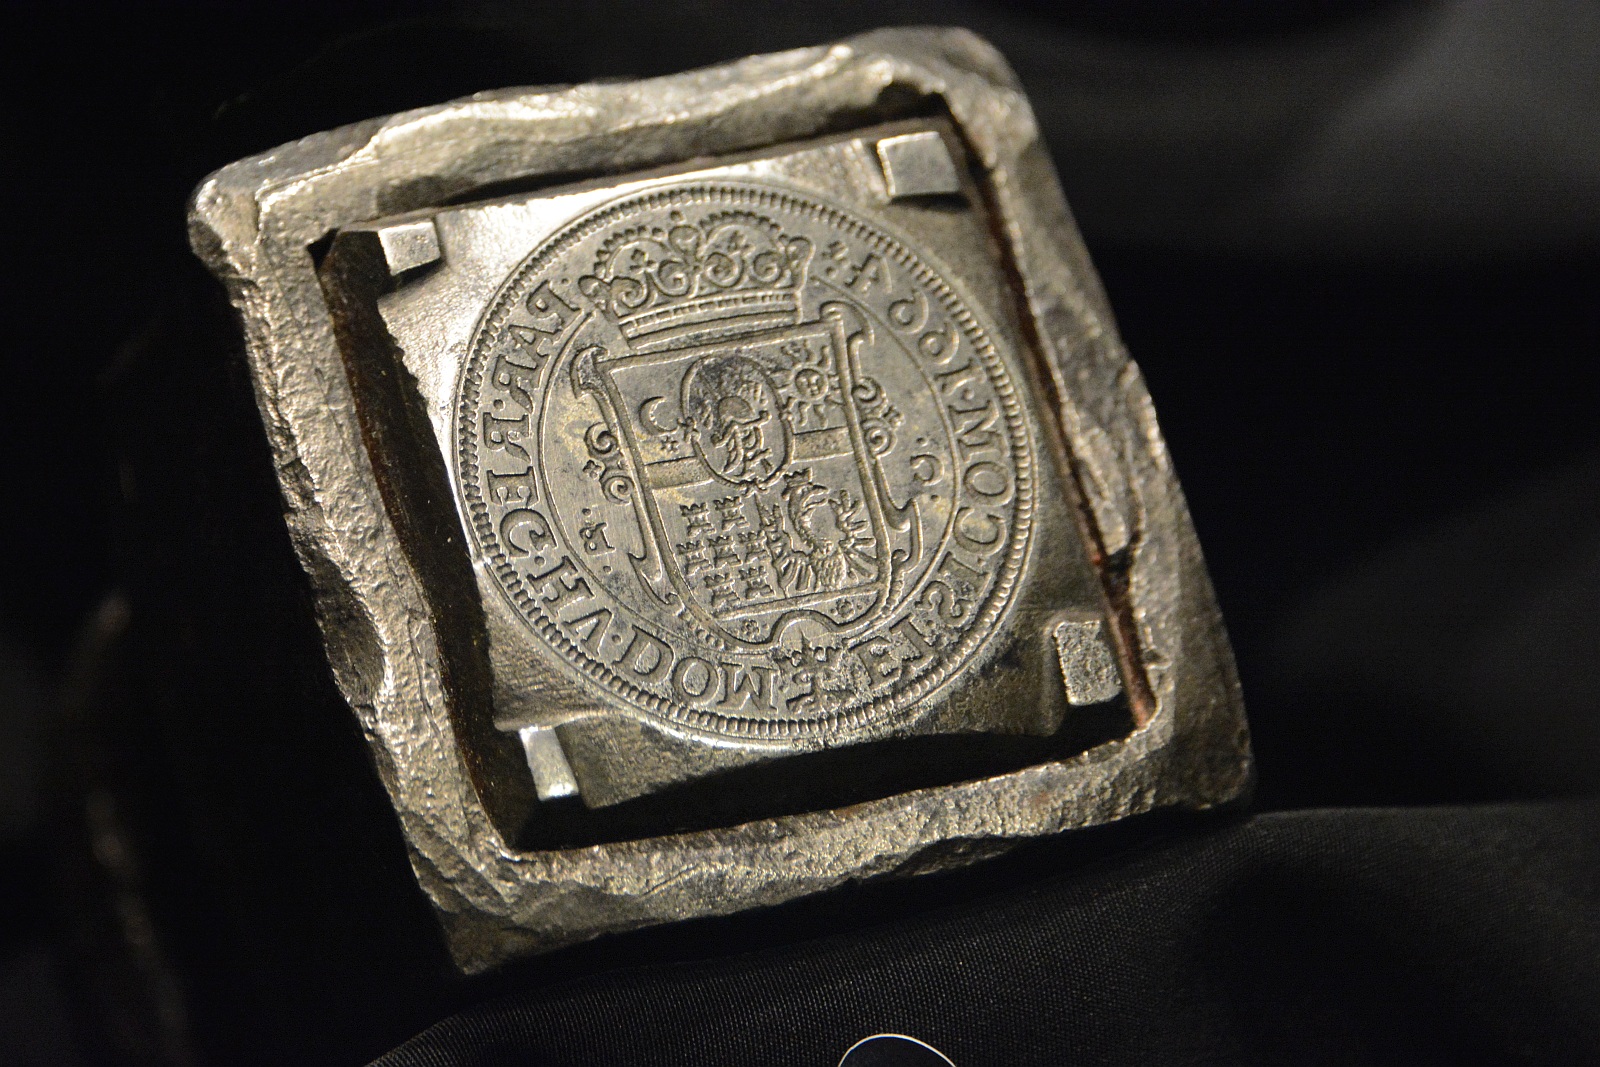 Fejedelmi kincsek a múzeumban - június 30-ig láthatók a páratlan érme ritkaságok